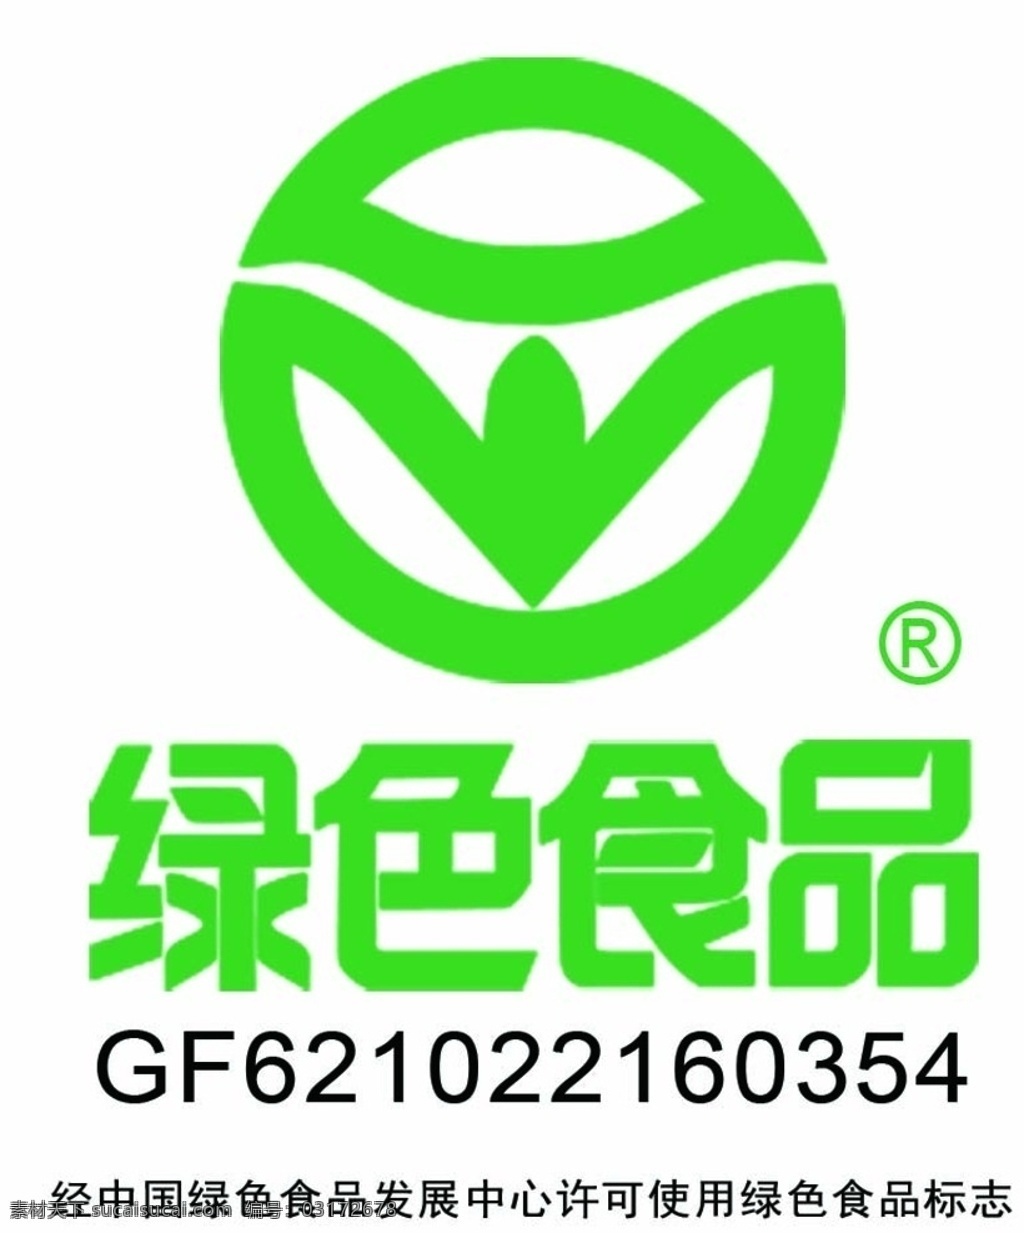 绿色食品标志 有机食品 有机认证 质量认证 绿色认证标志 标志图标 公共标识标志